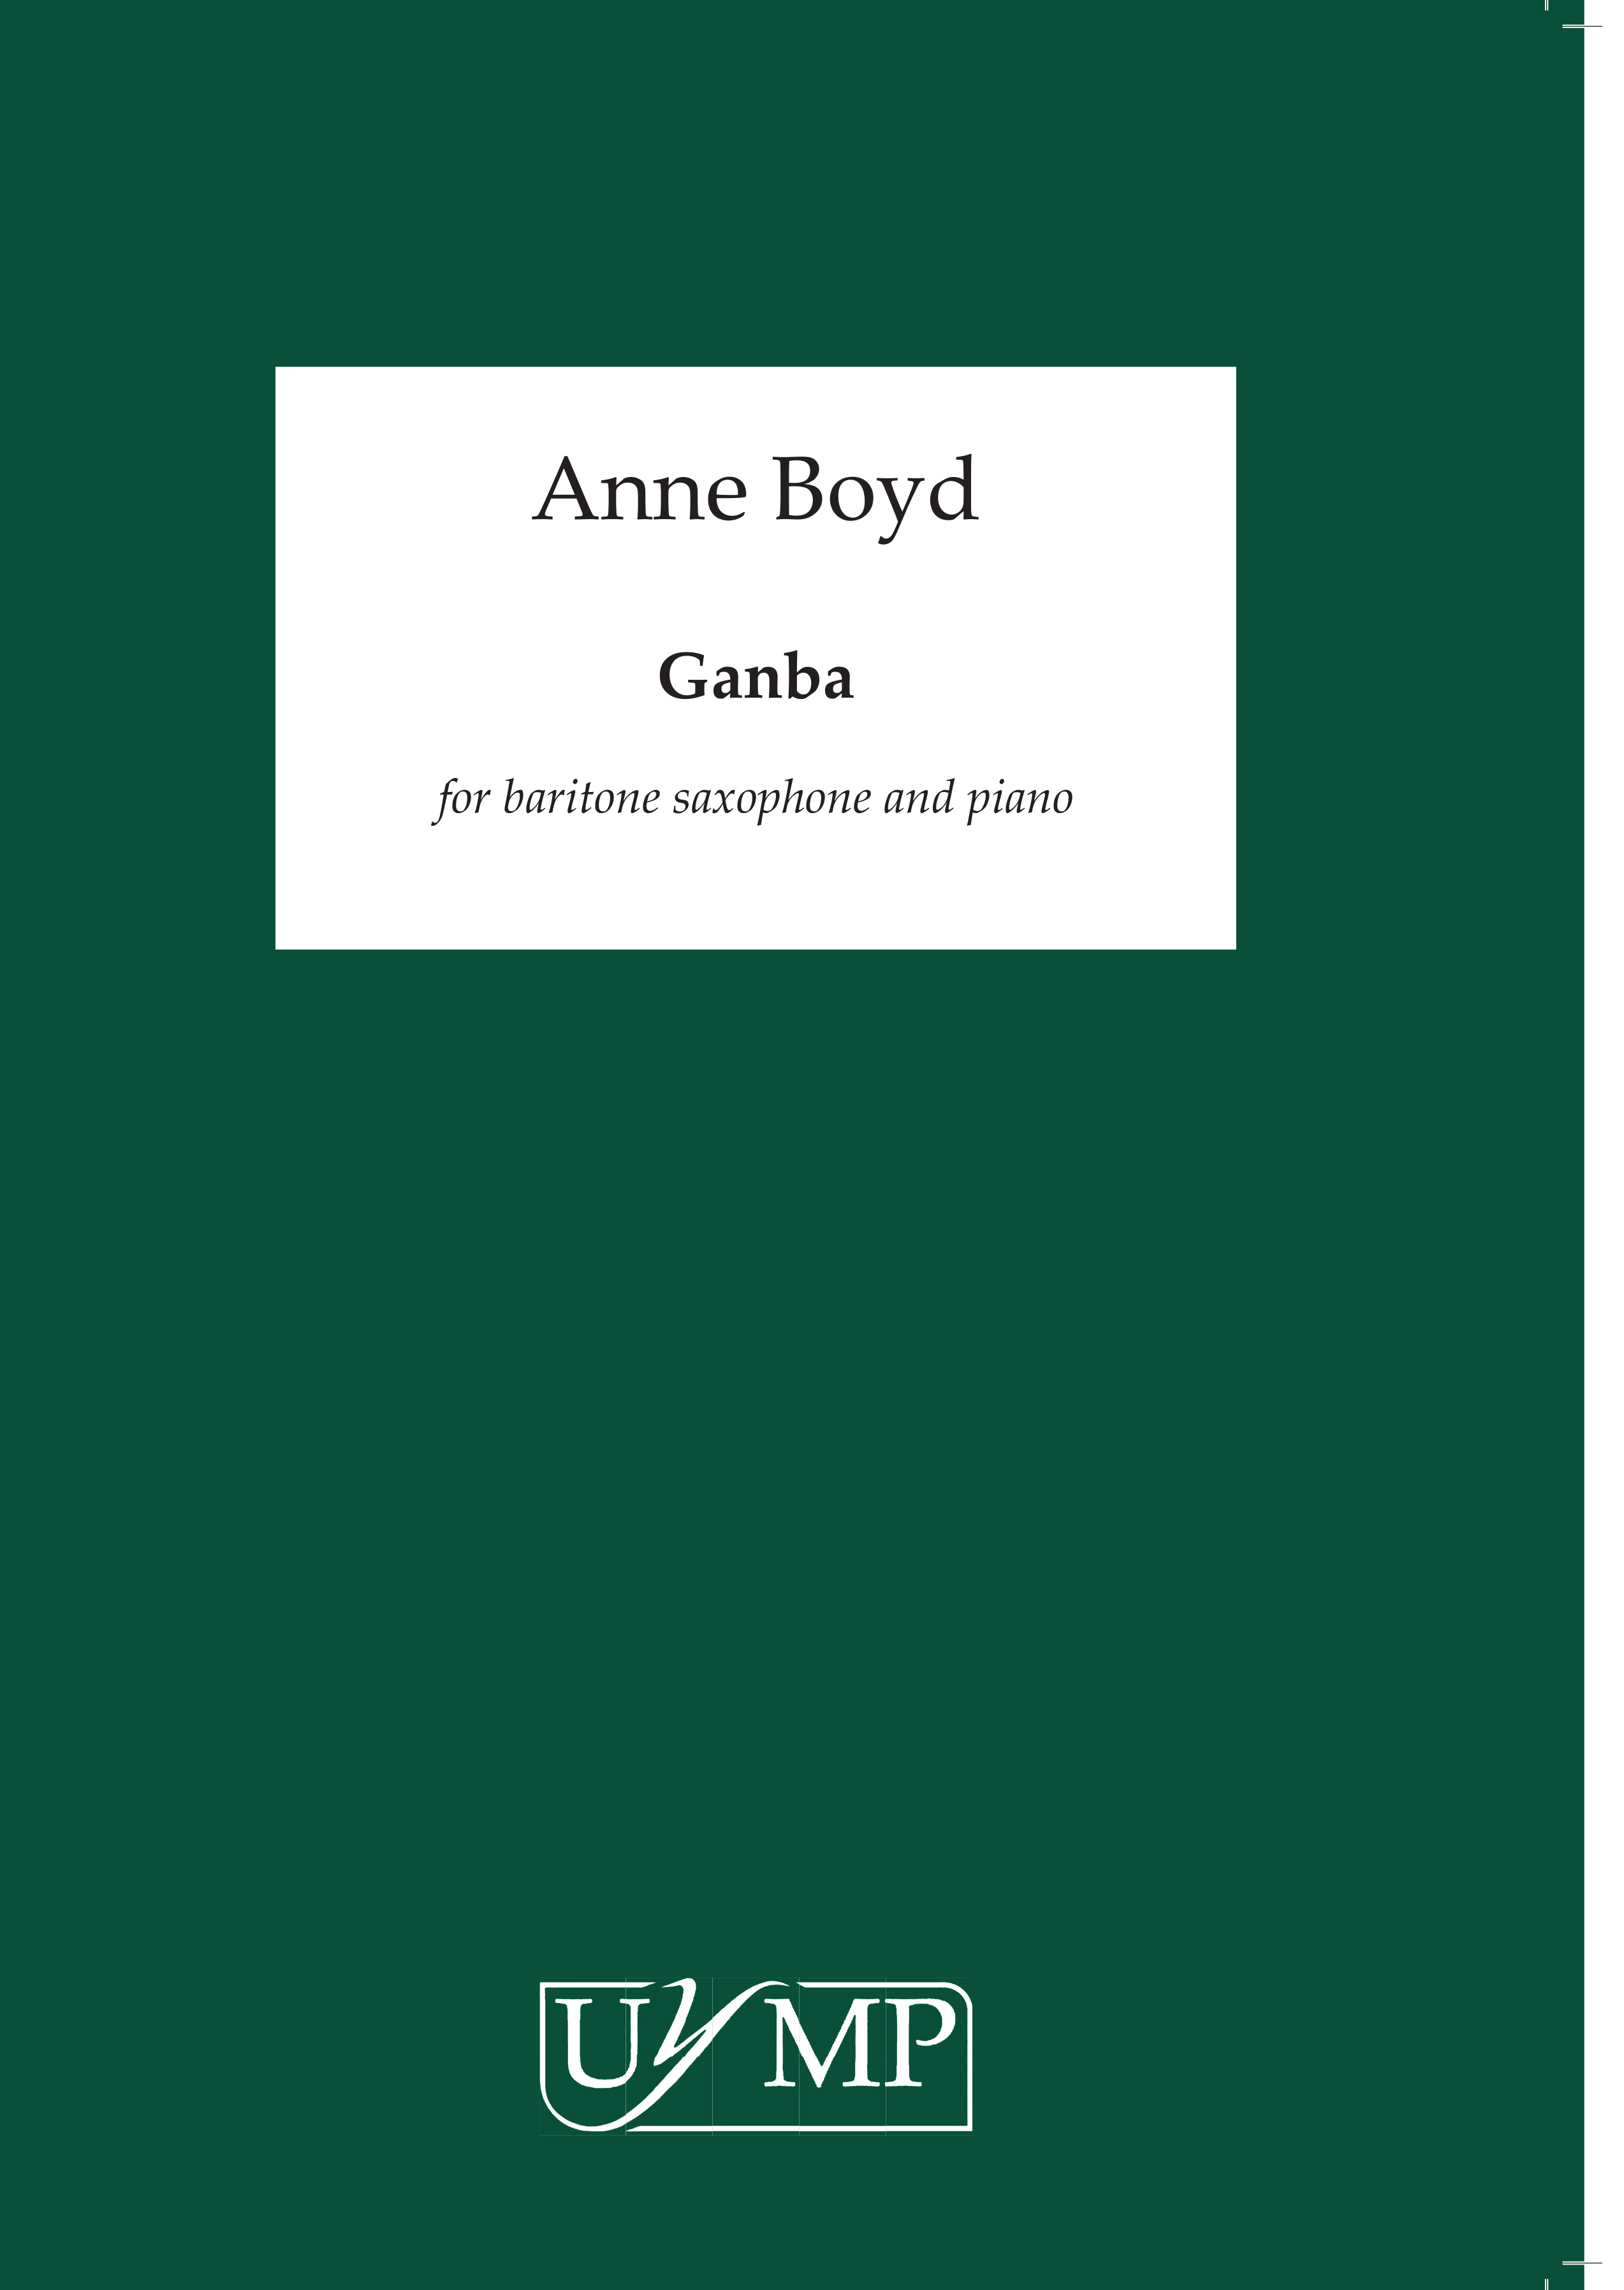 Anne Boyd: Ganba